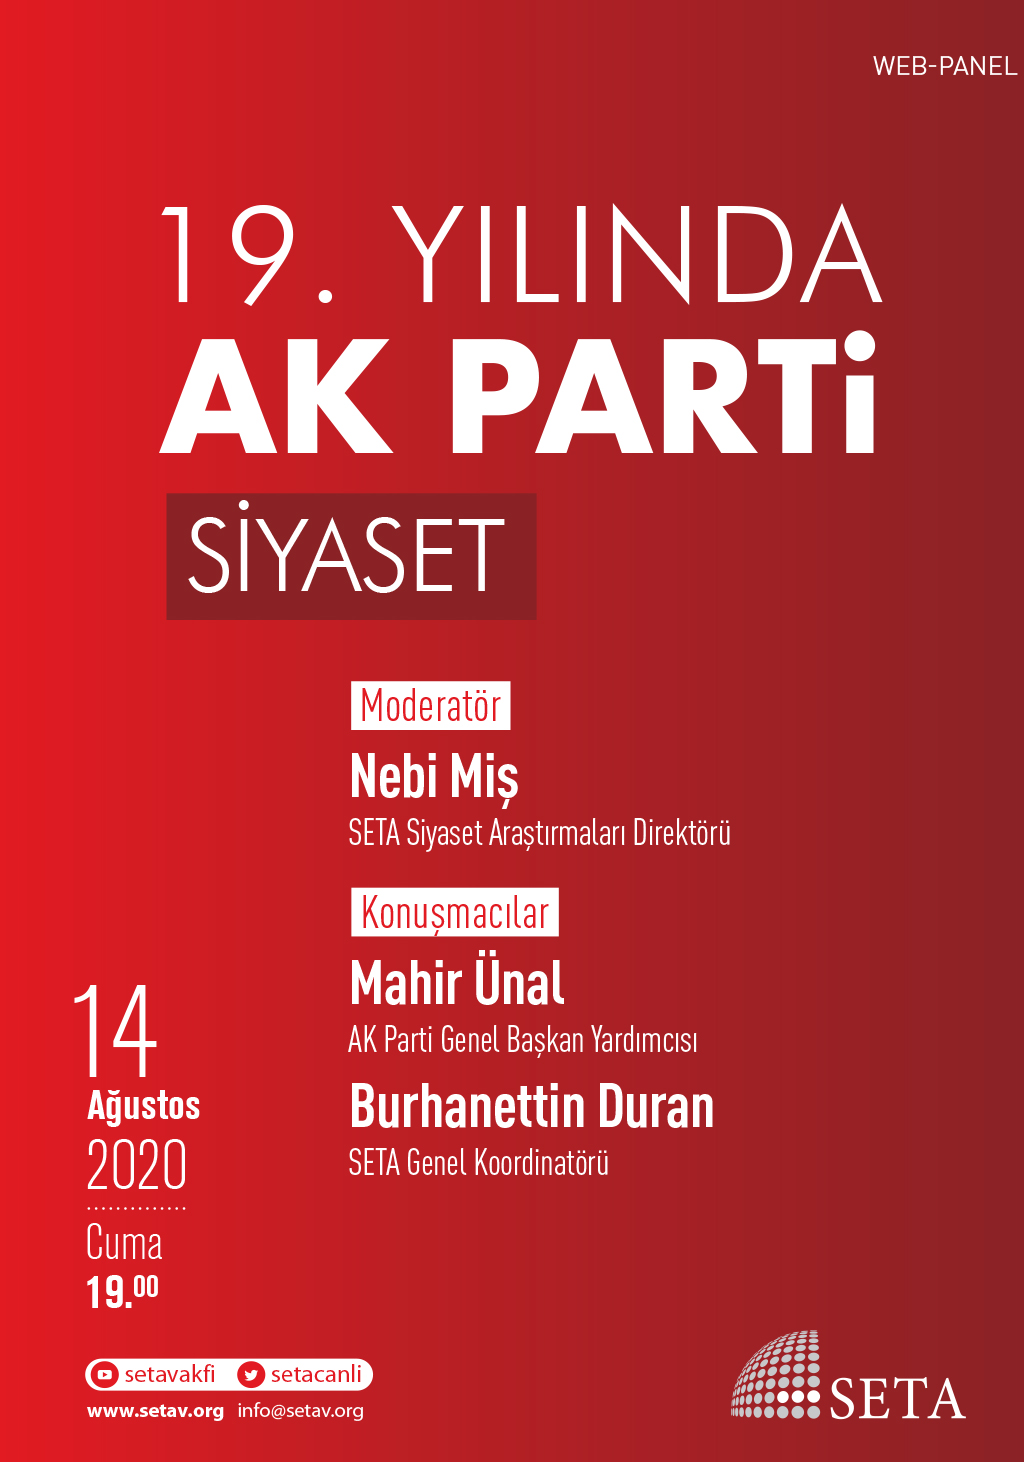 Web Panel: 19. Yılında AK Parti | SİYASET